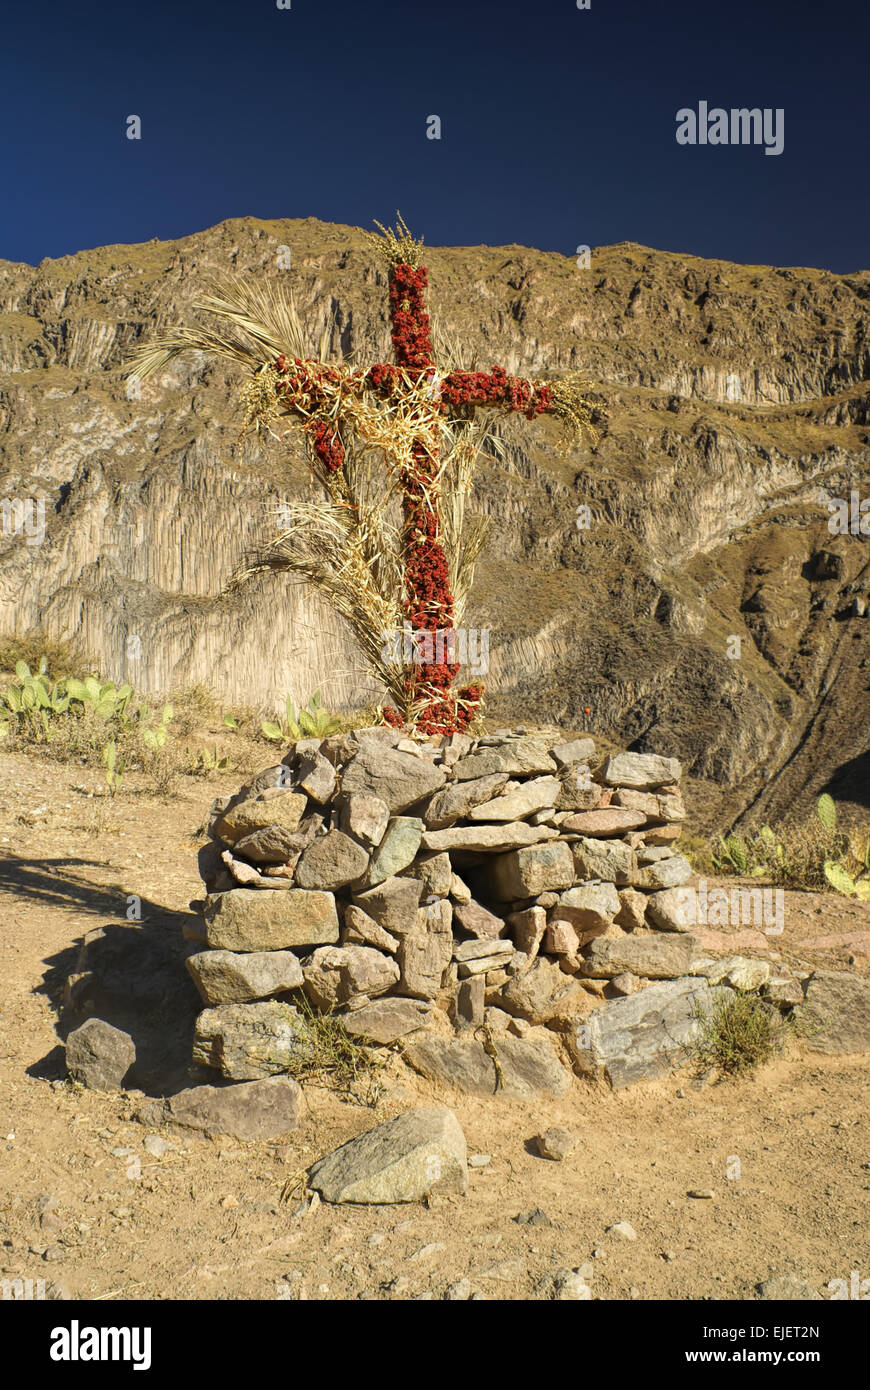 Una croce cristiana avvolto intorno con fiori sul peruviano arido paesaggio nei pressi di Canon del Colca Foto Stock